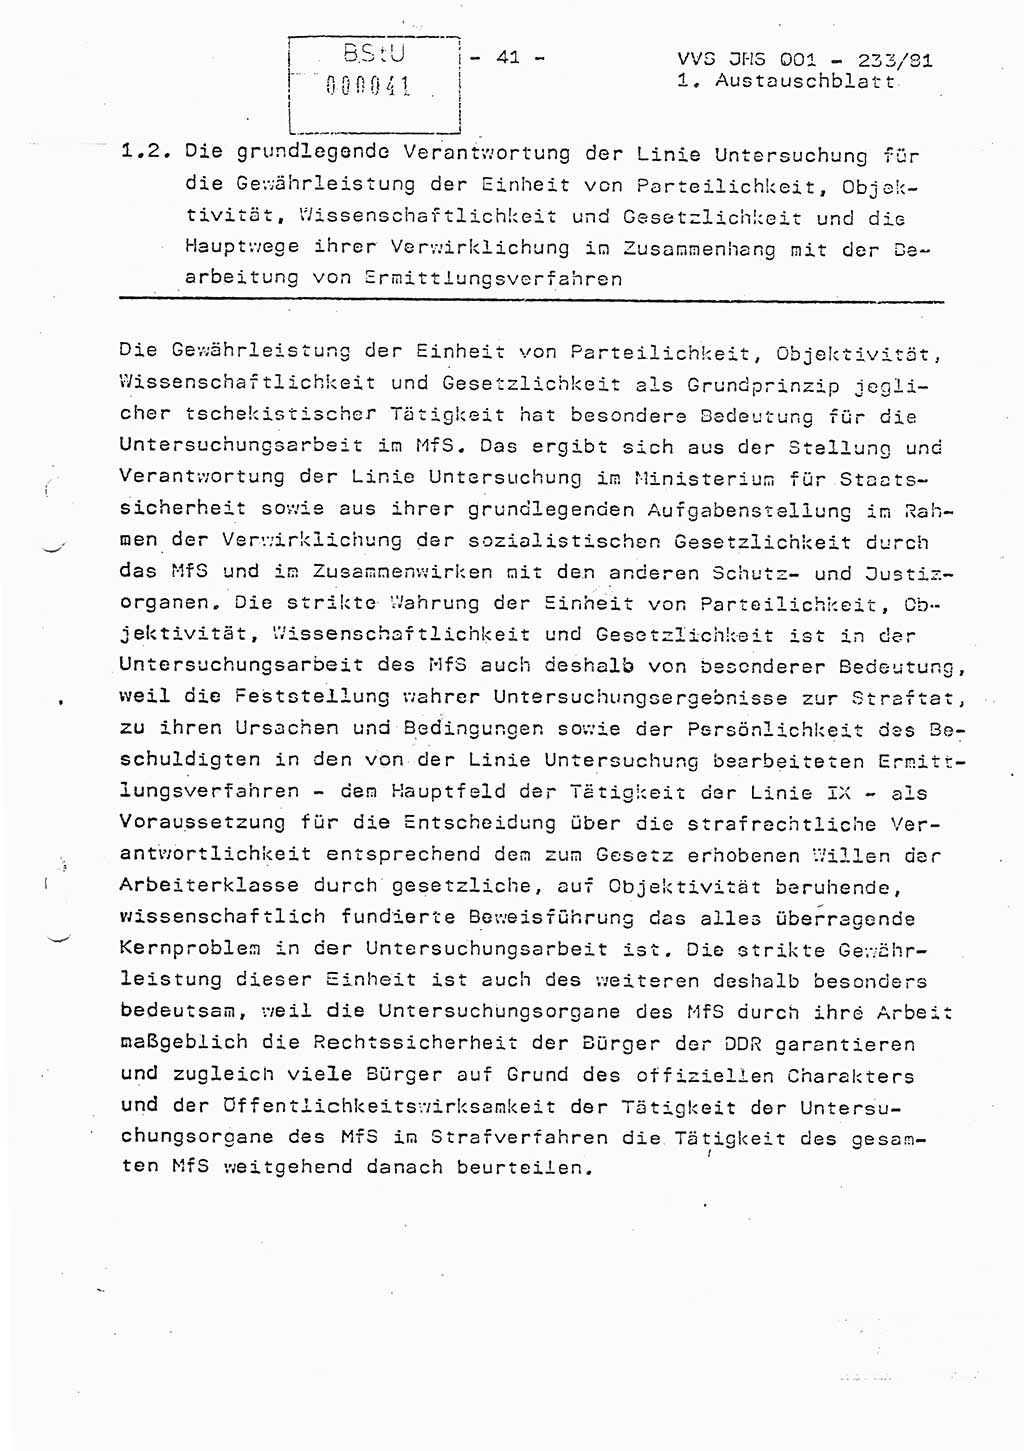 Dissertation Oberstleutnant Horst Zank (JHS), Oberstleutnant Dr. Karl-Heinz Knoblauch (JHS), Oberstleutnant Gustav-Adolf Kowalewski (HA Ⅸ), Oberstleutnant Wolfgang Plötner (HA Ⅸ), Ministerium für Staatssicherheit (MfS) [Deutsche Demokratische Republik (DDR)], Juristische Hochschule (JHS), Vertrauliche Verschlußsache (VVS) o001-233/81, Potsdam 1981, Blatt 41 (Diss. MfS DDR JHS VVS o001-233/81 1981, Bl. 41)